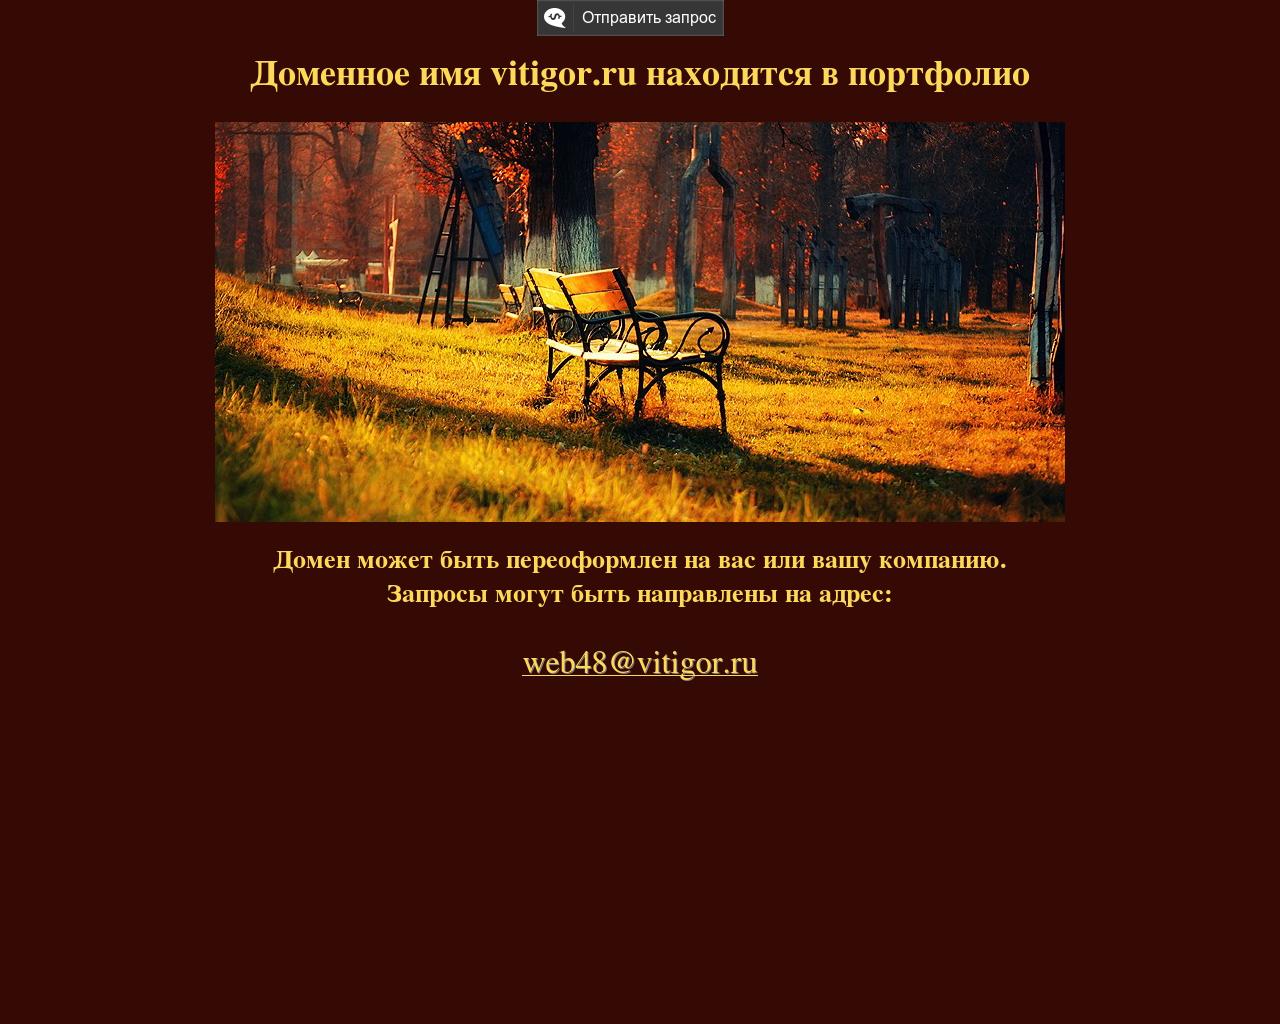 Изображение сайта vitigor.ru в разрешении 1280x1024